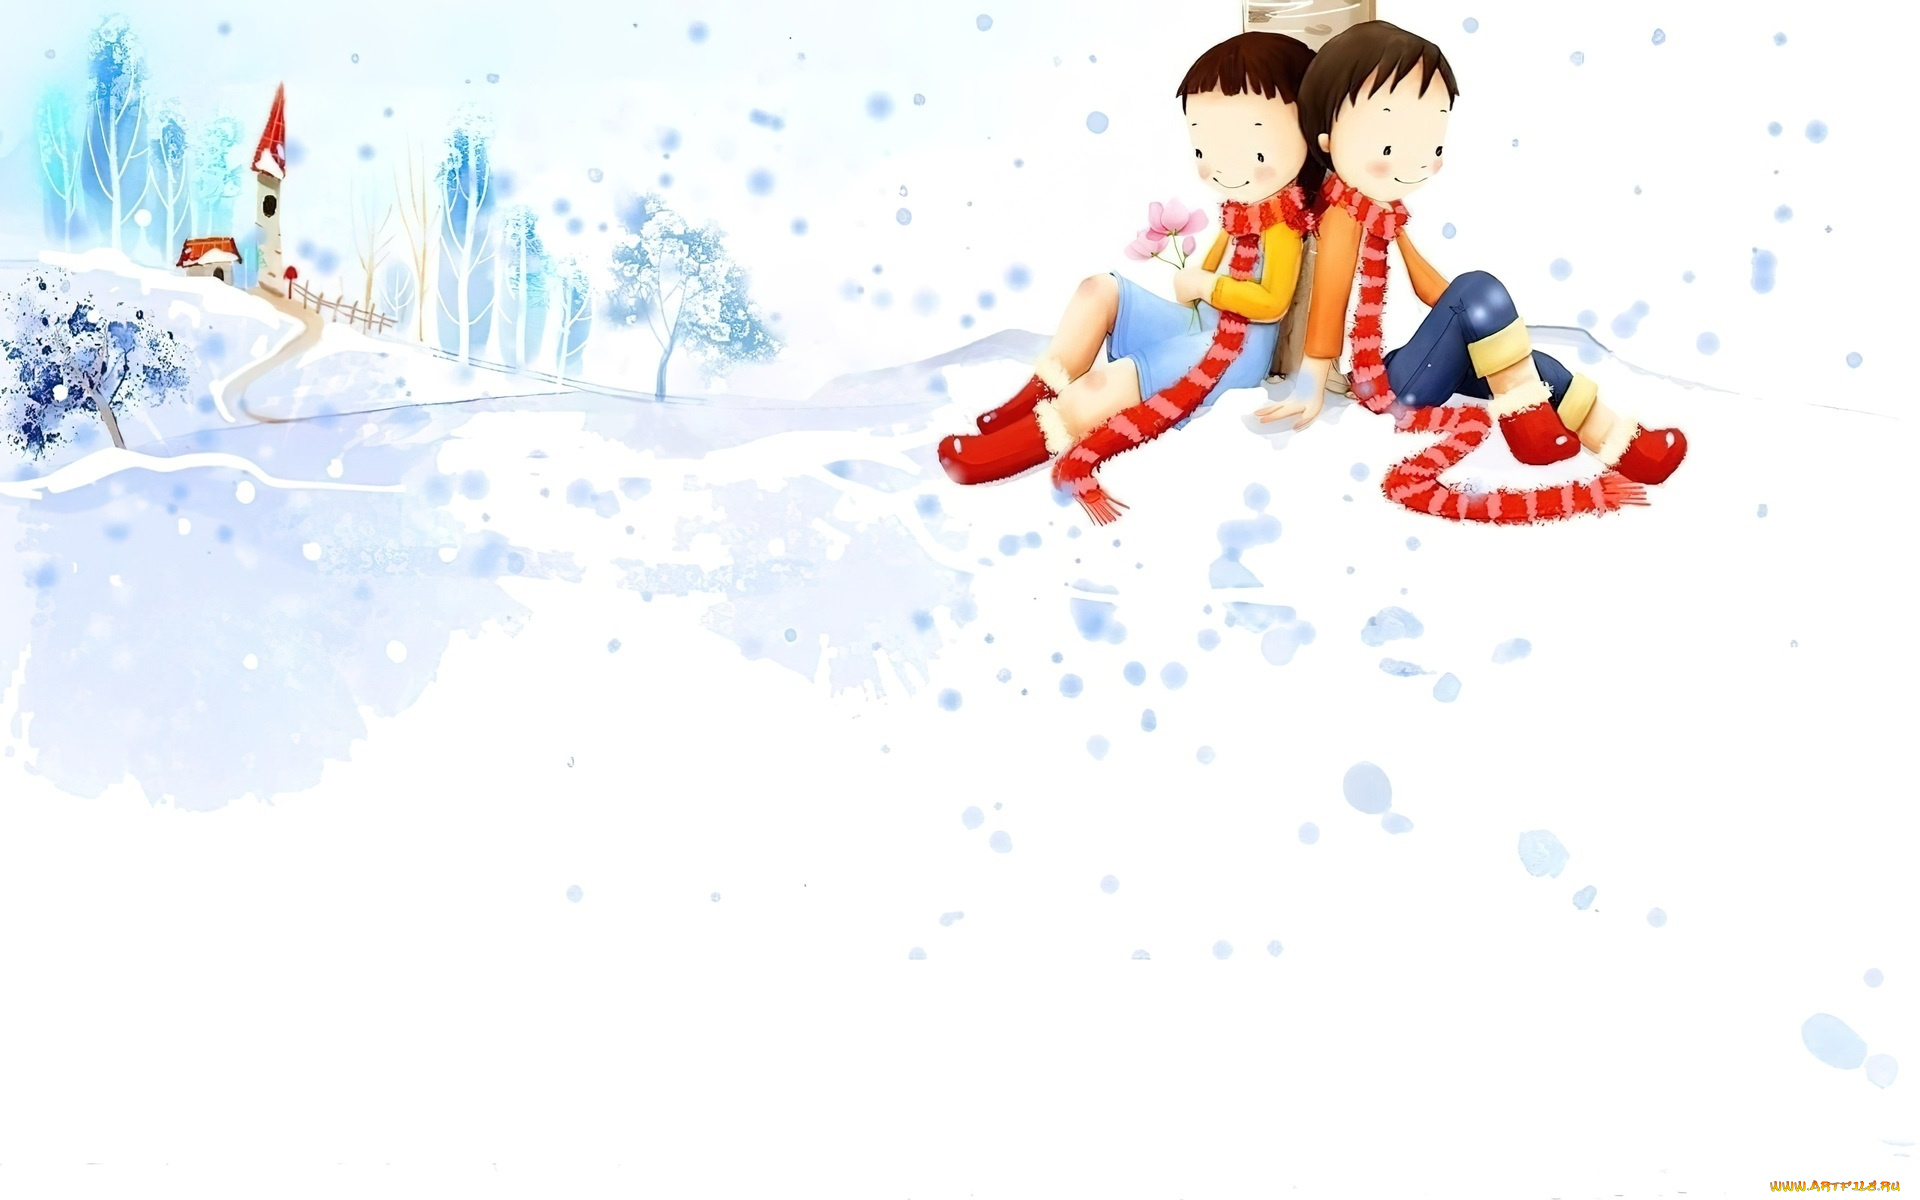 рисованное, дети, мальчик, девочка, шарфы, снег, дом